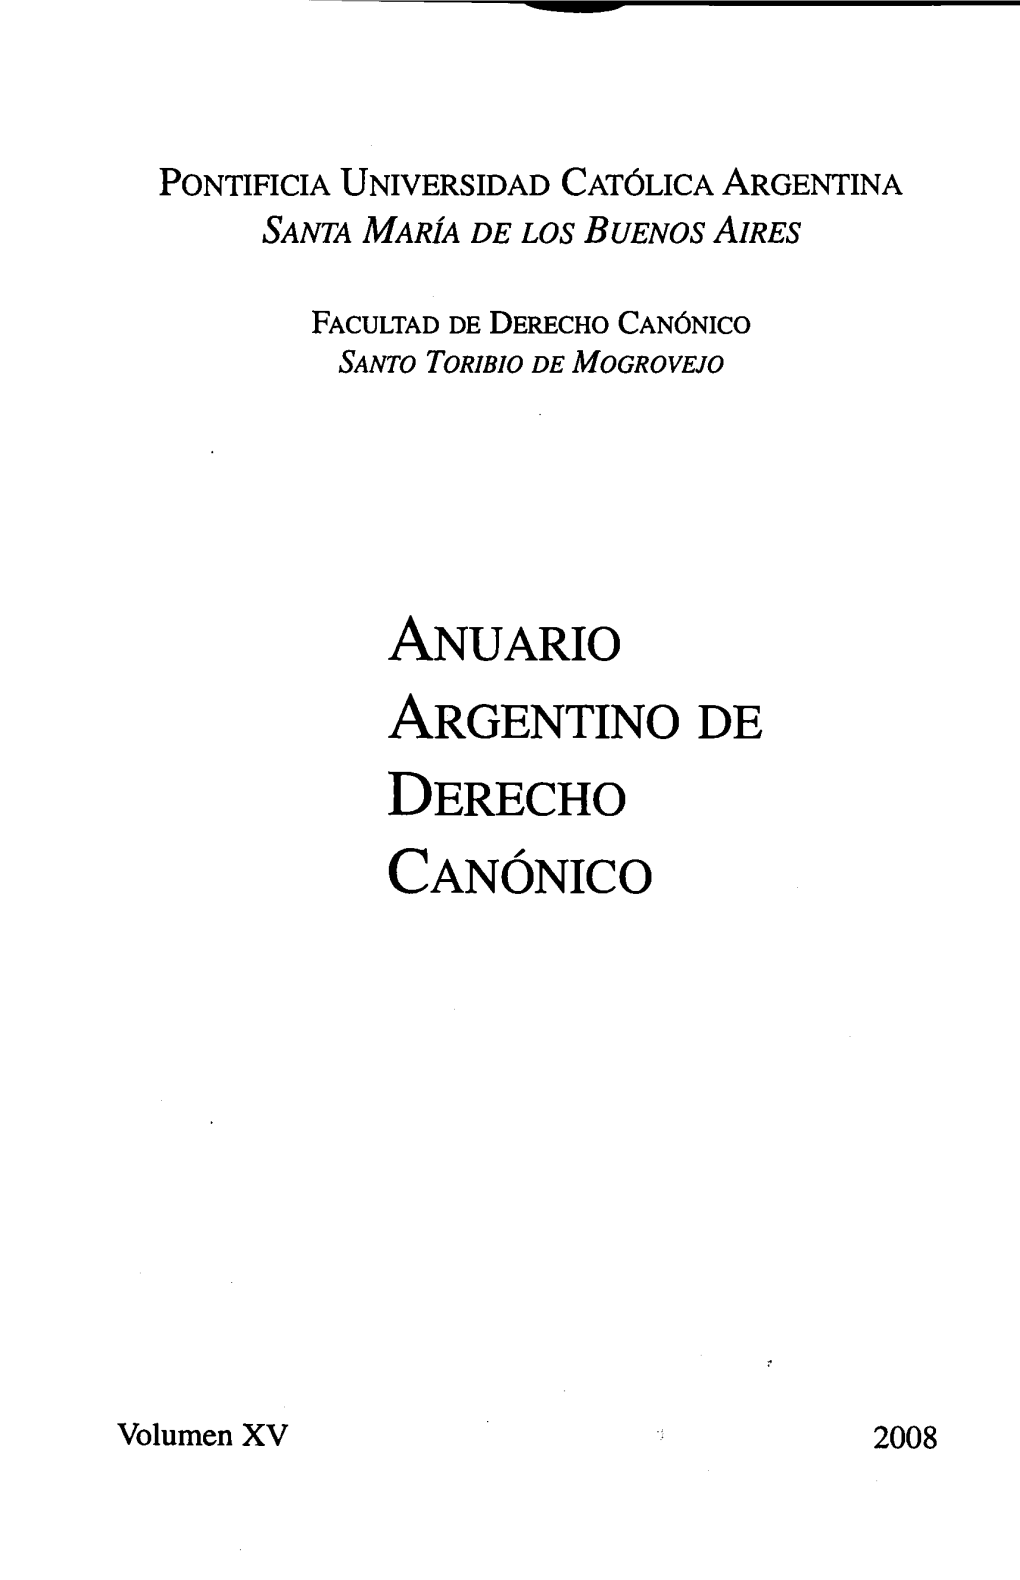 Anuario Argentino De Derecho Canónico, Vol. 15, 2008